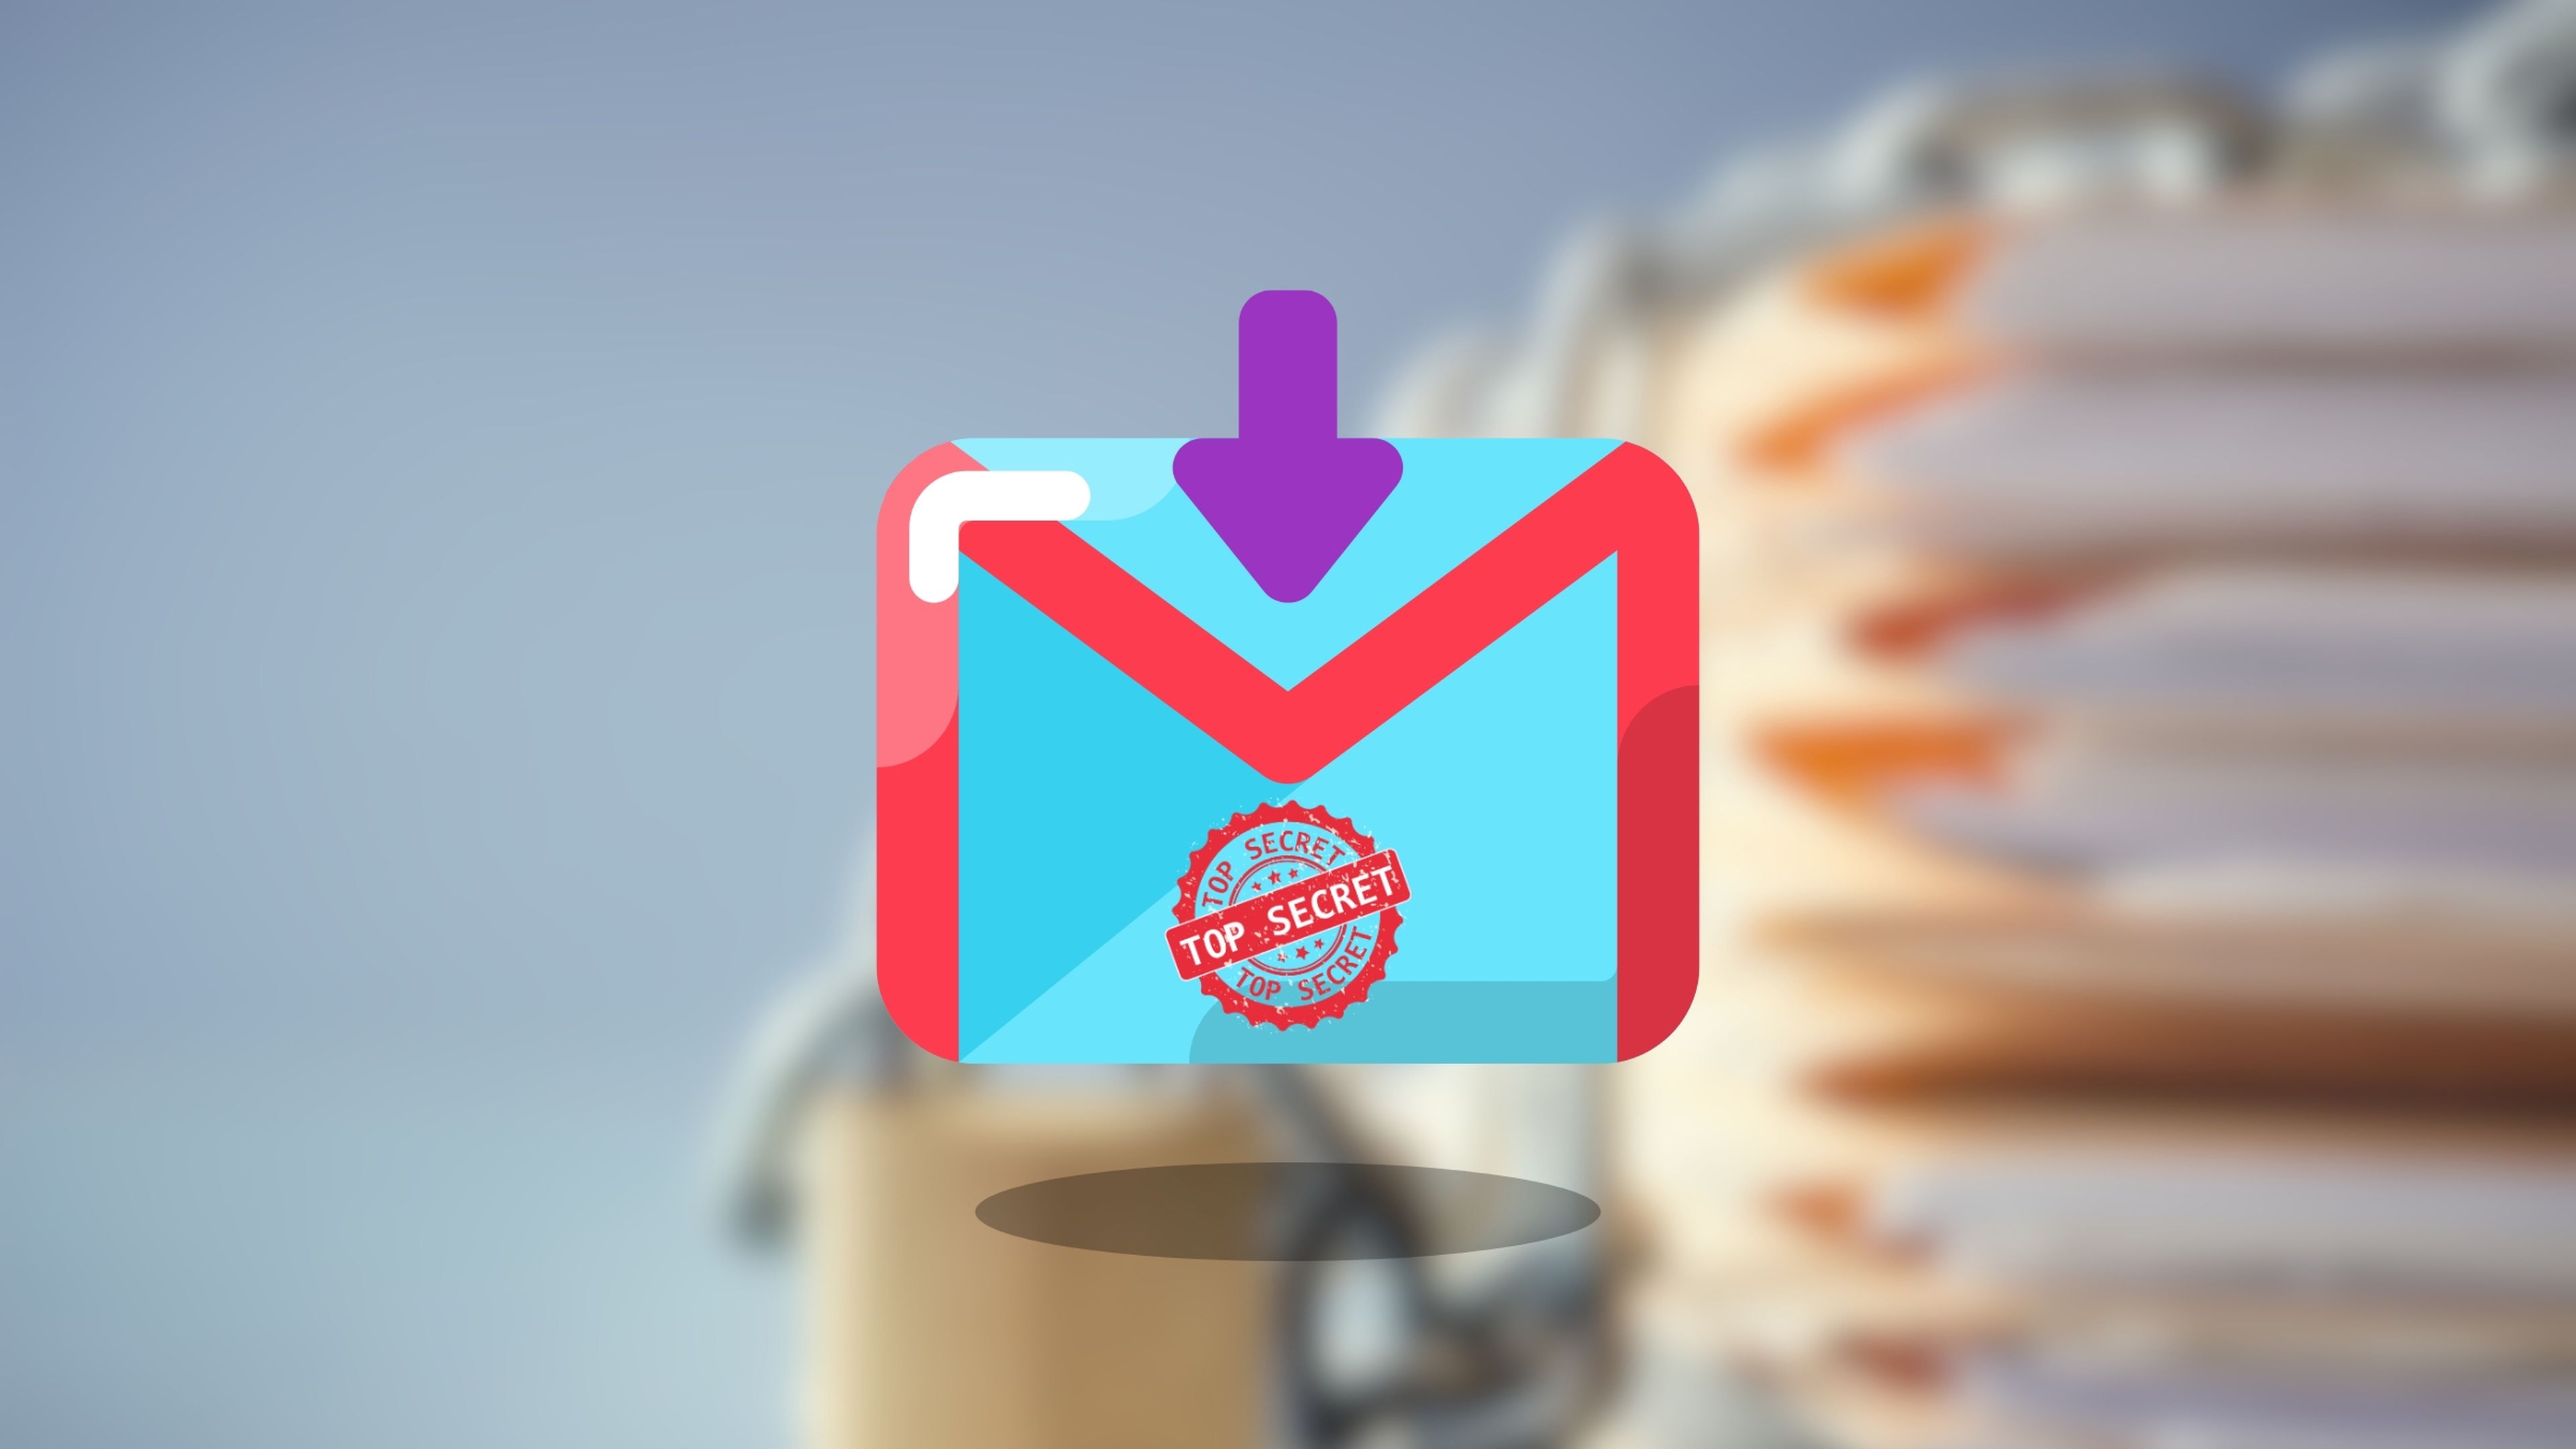 CÃ³mo usar el modo confidencial de Gmail para enviar y abrir correos que se autodestruyen